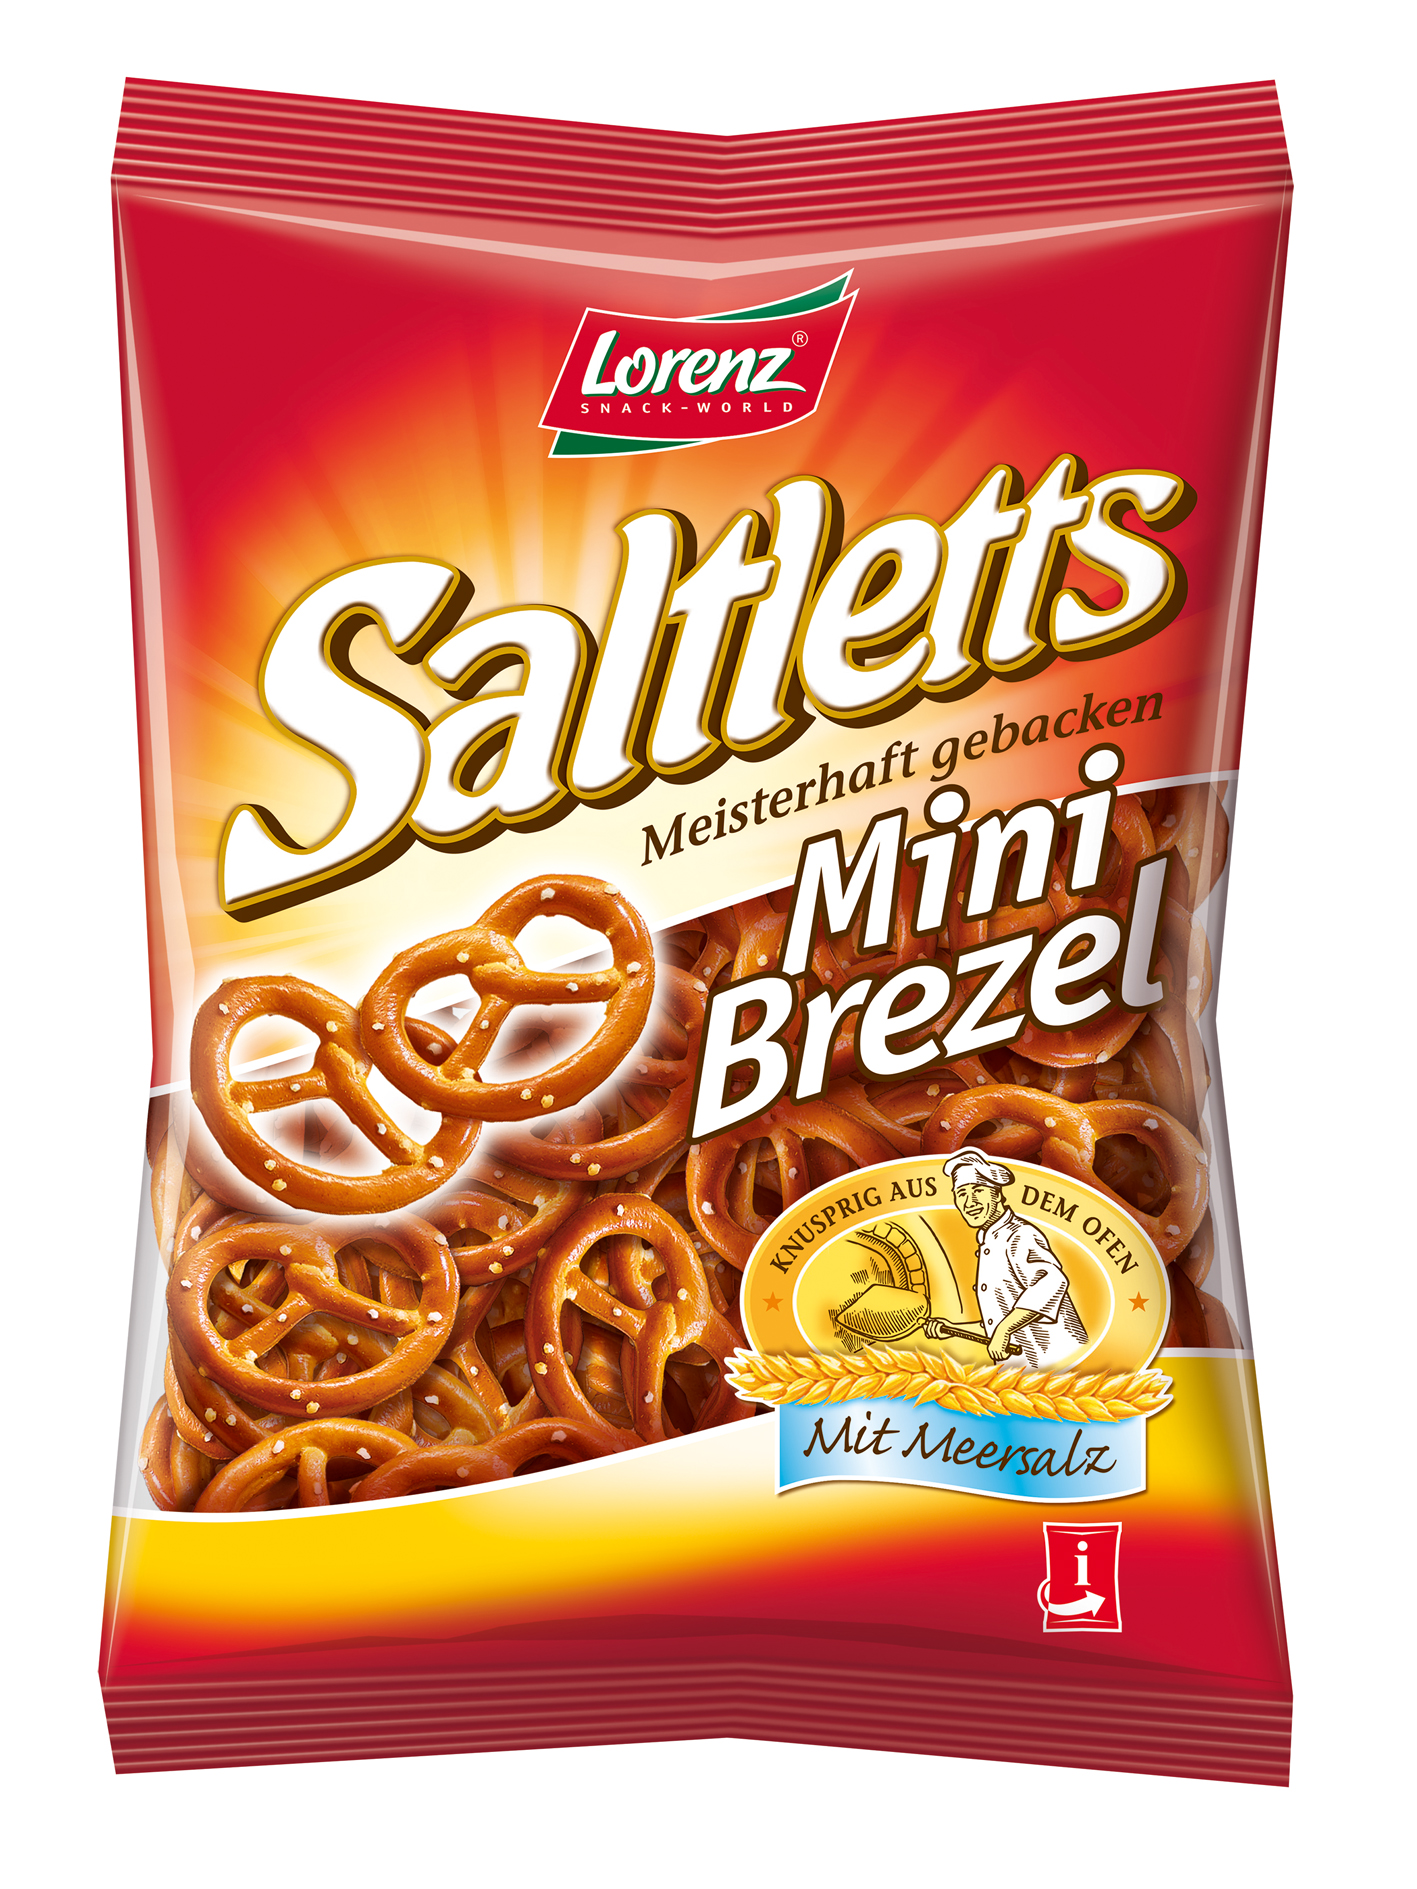 Jetzt auch in Vending fähiger 40-Gramm-Packung: Die Saltletts Mini Brezel. Foto: Lorenz Snack-World